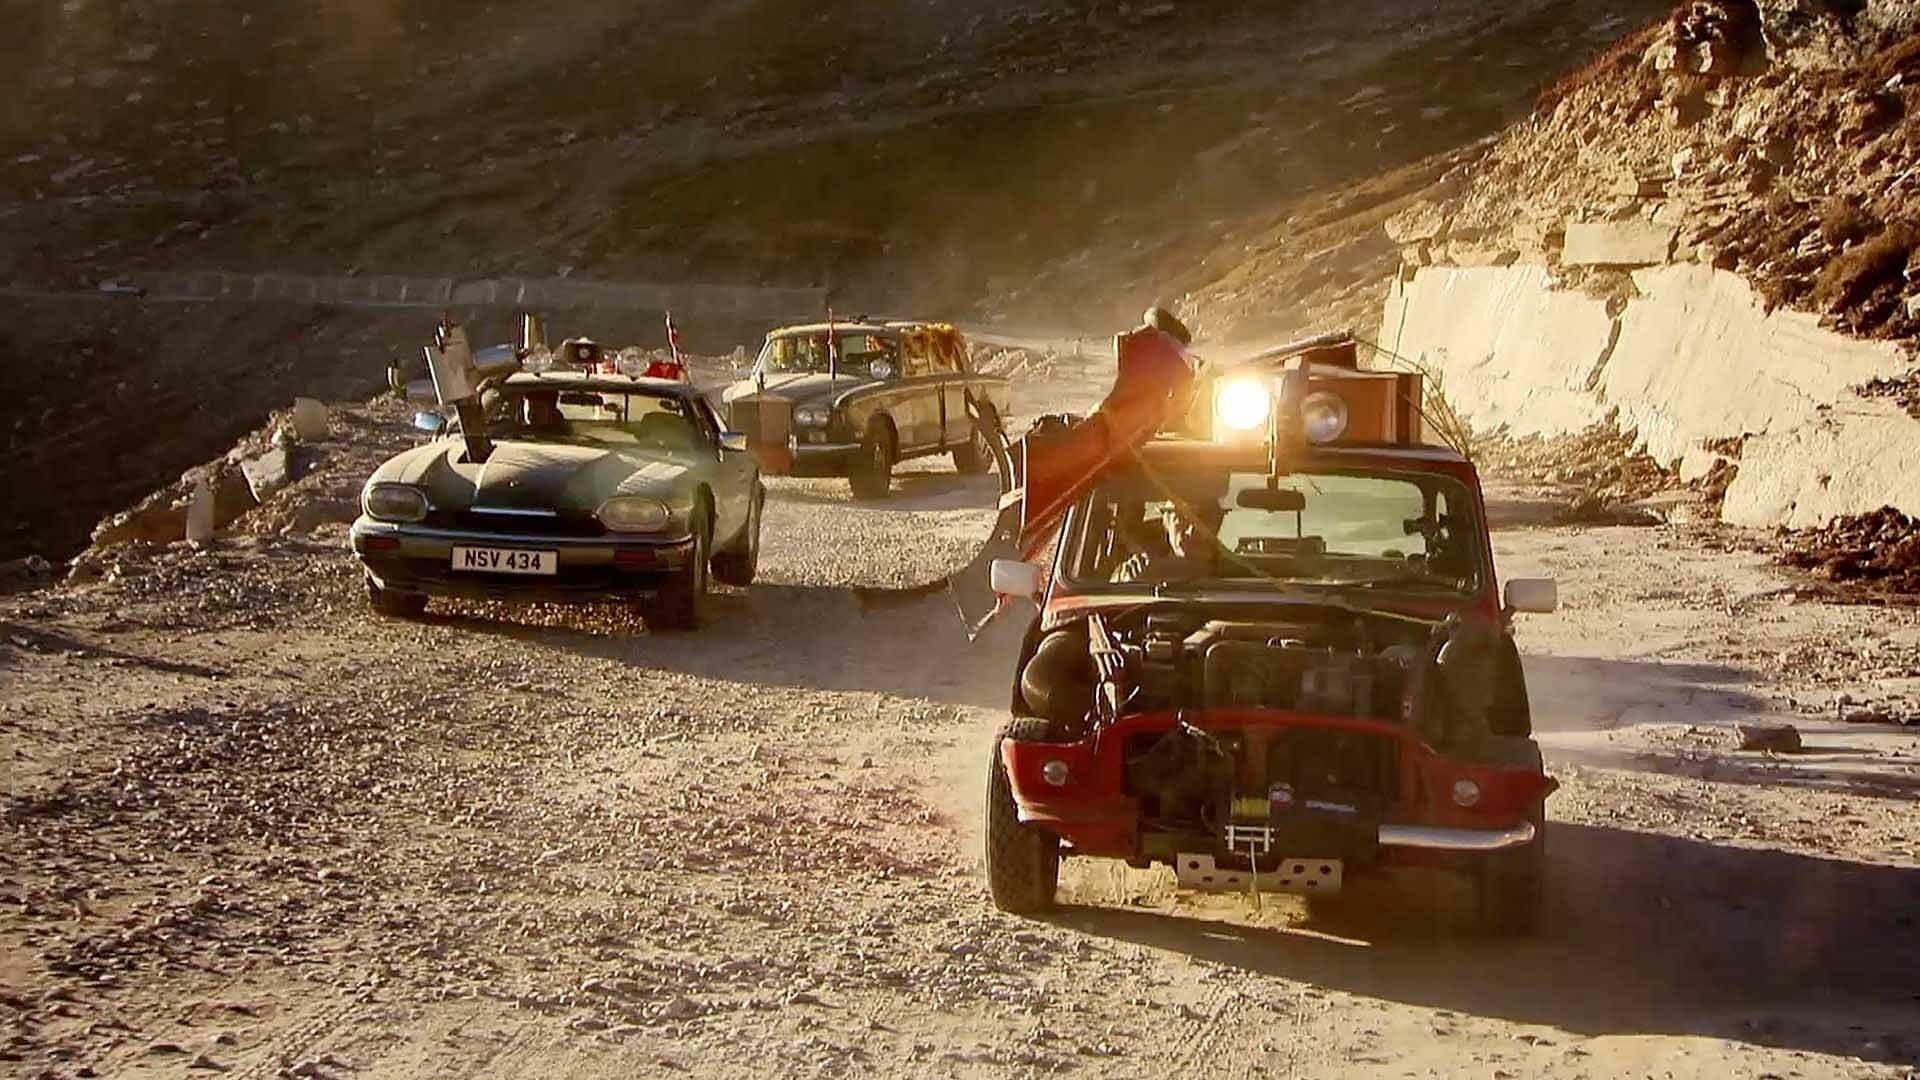 Top Gear: India Special backdrop